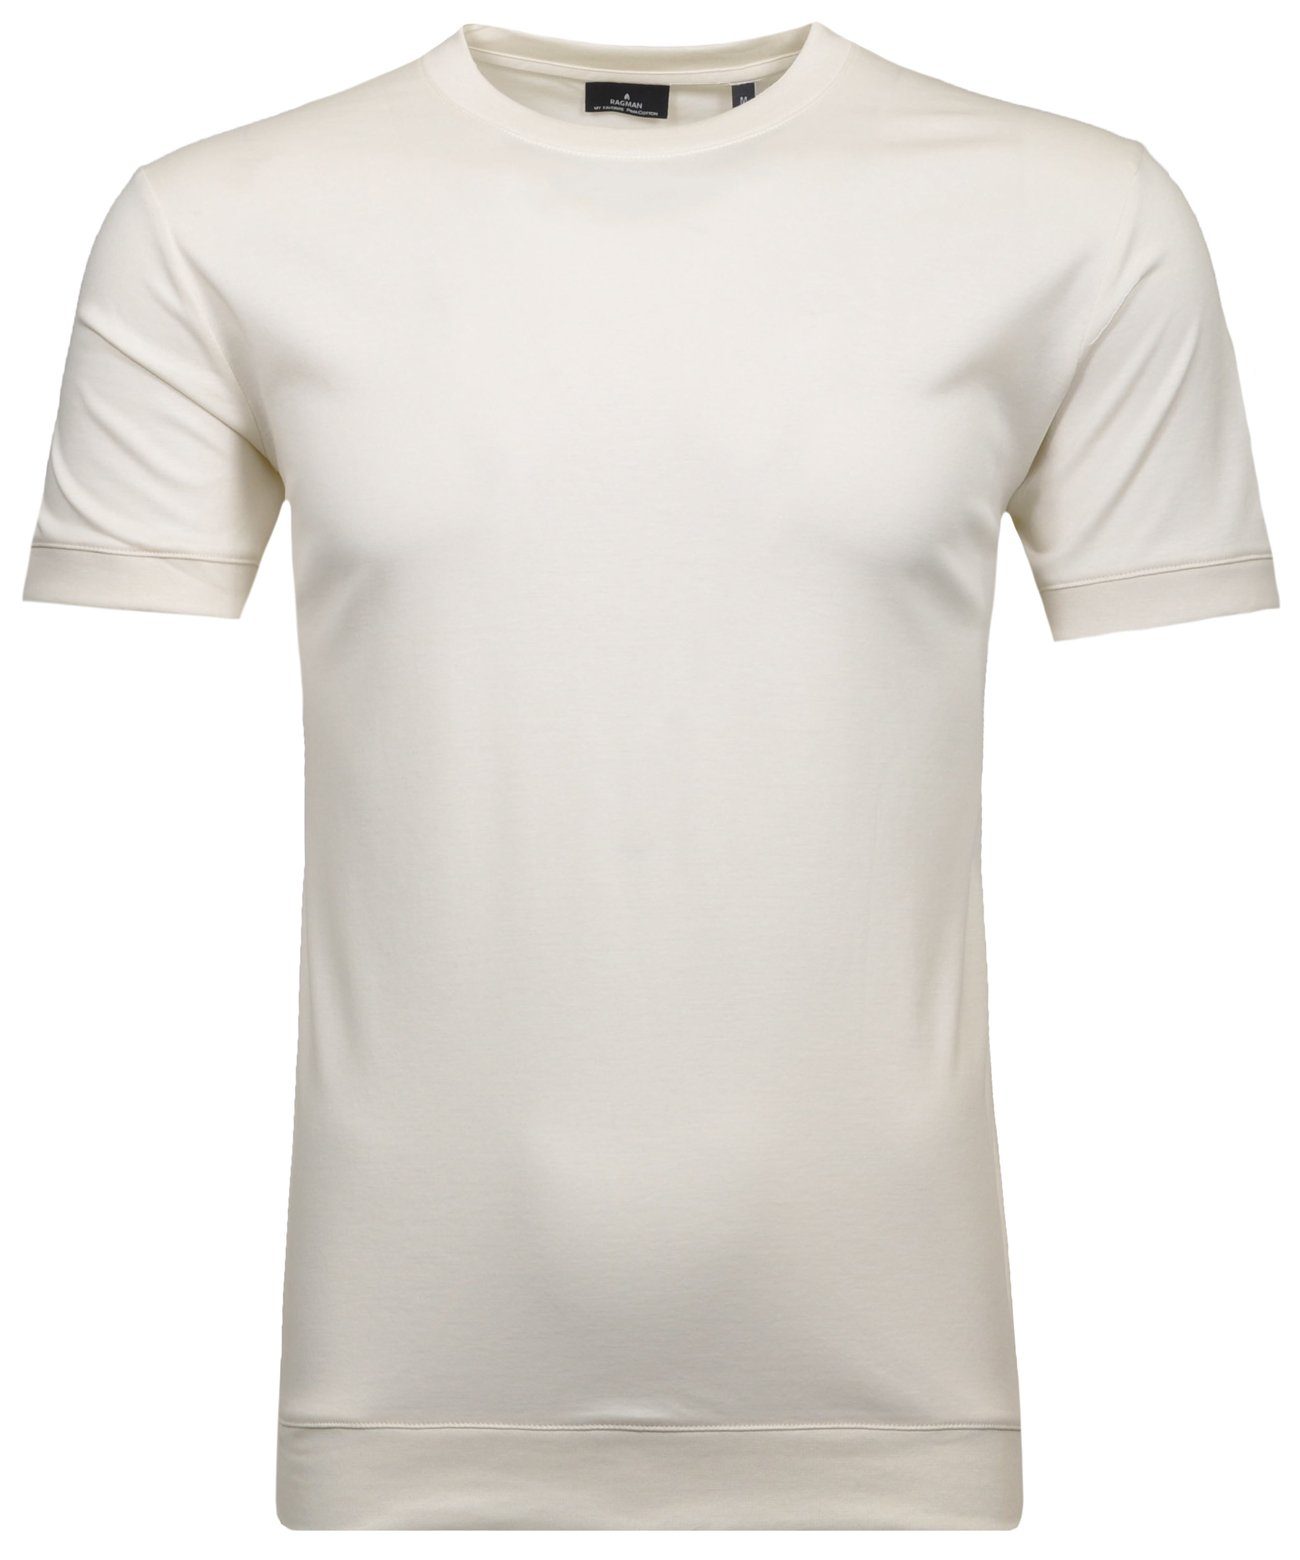 RAGMAN T-Shirt Ecru | T-Shirts